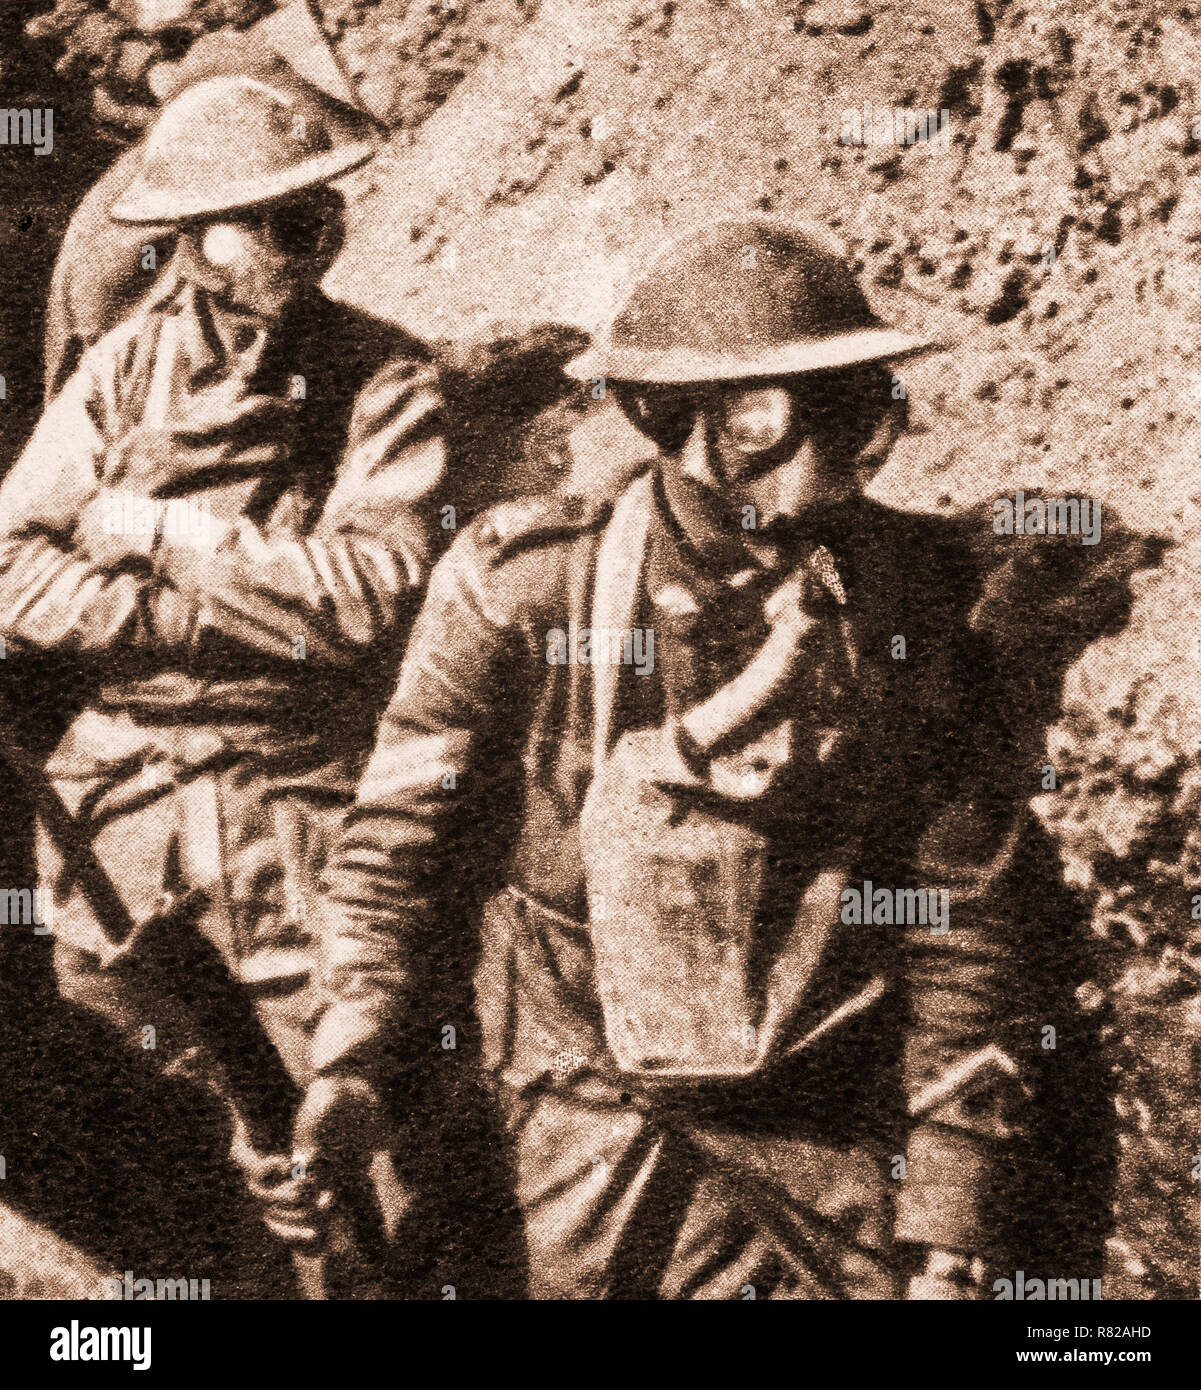 Soldats britanniques avec des masques à gaz à la suite de l'utilisation de gaz empoisonné de utilisé pour la première fois en avril 1915. Chlore ou le gaz moutarde a été libéré à partir de cylindres dans un nuage dense ou tirés en obus pour devenir une arme offensive des deux côtés du conflit. Banque D'Images